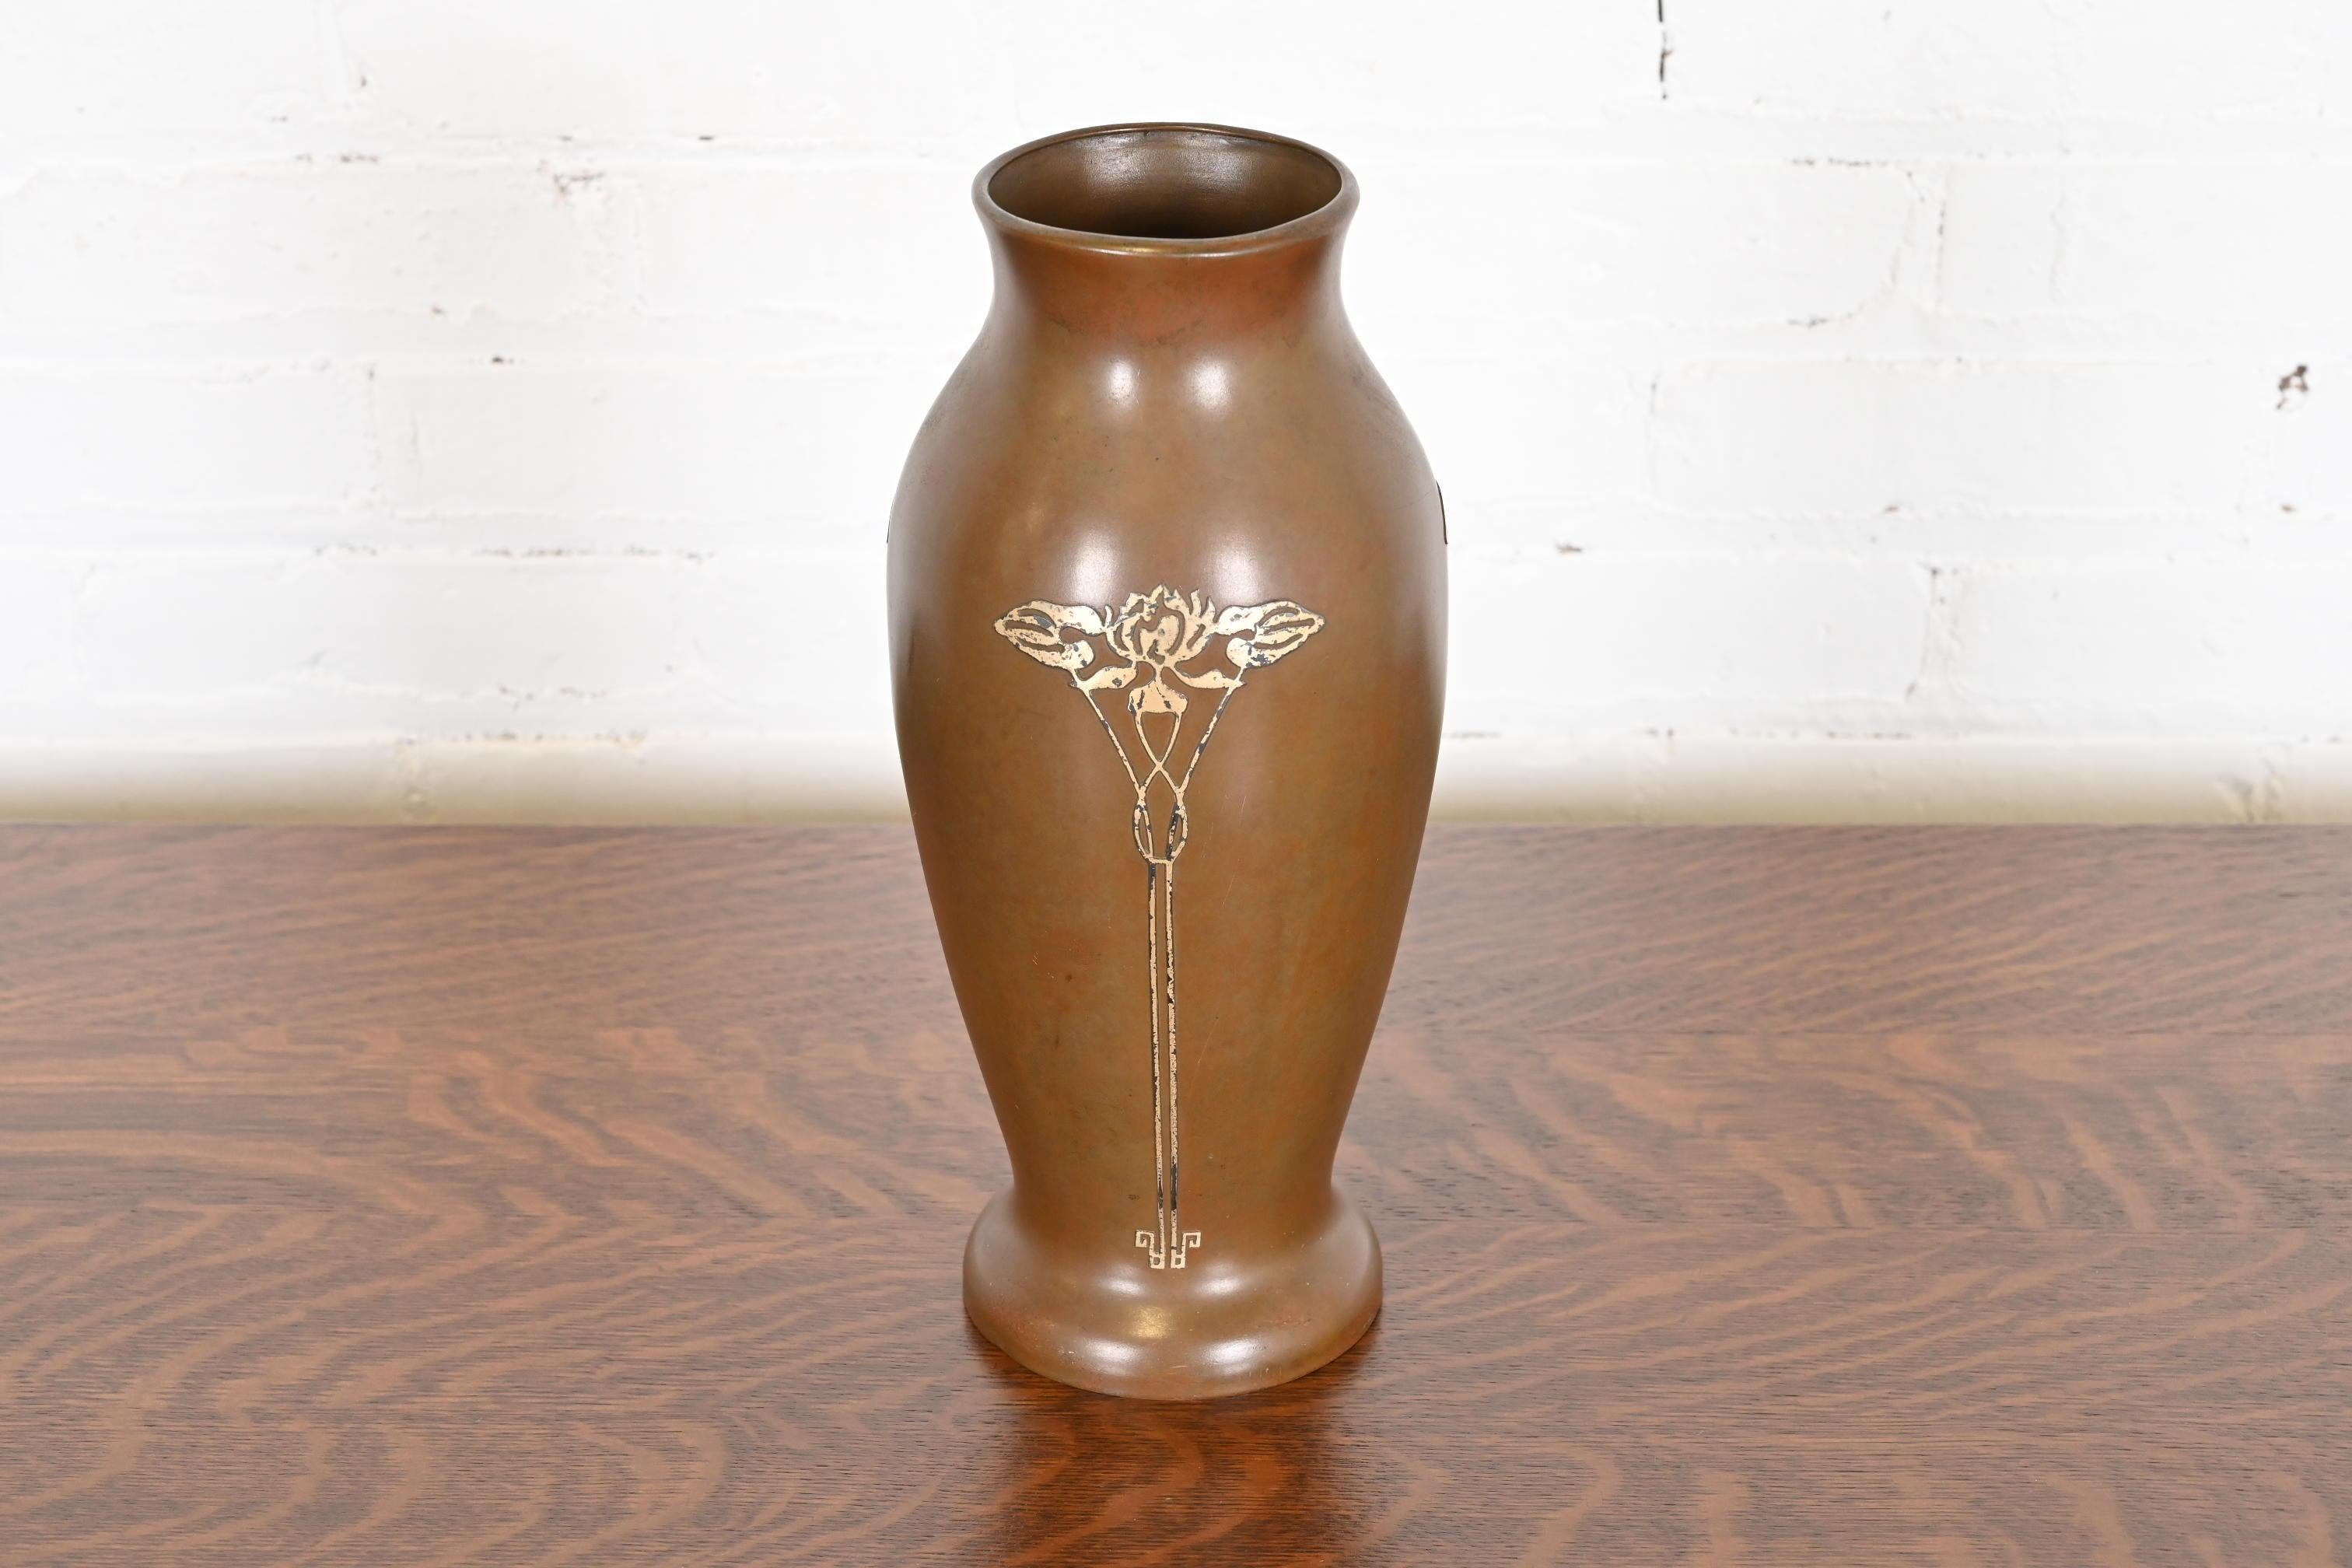 Eine schöne Arts & Crafts Periode Sterling Silber auf Bronze große florale Vase

Von Silver Crest (der Marke von Smith Metal Arts Co.), einem Ableger von Heintz Art Metal Shop

USA, Anfang 20. Jahrhundert

Maße: 5,5 